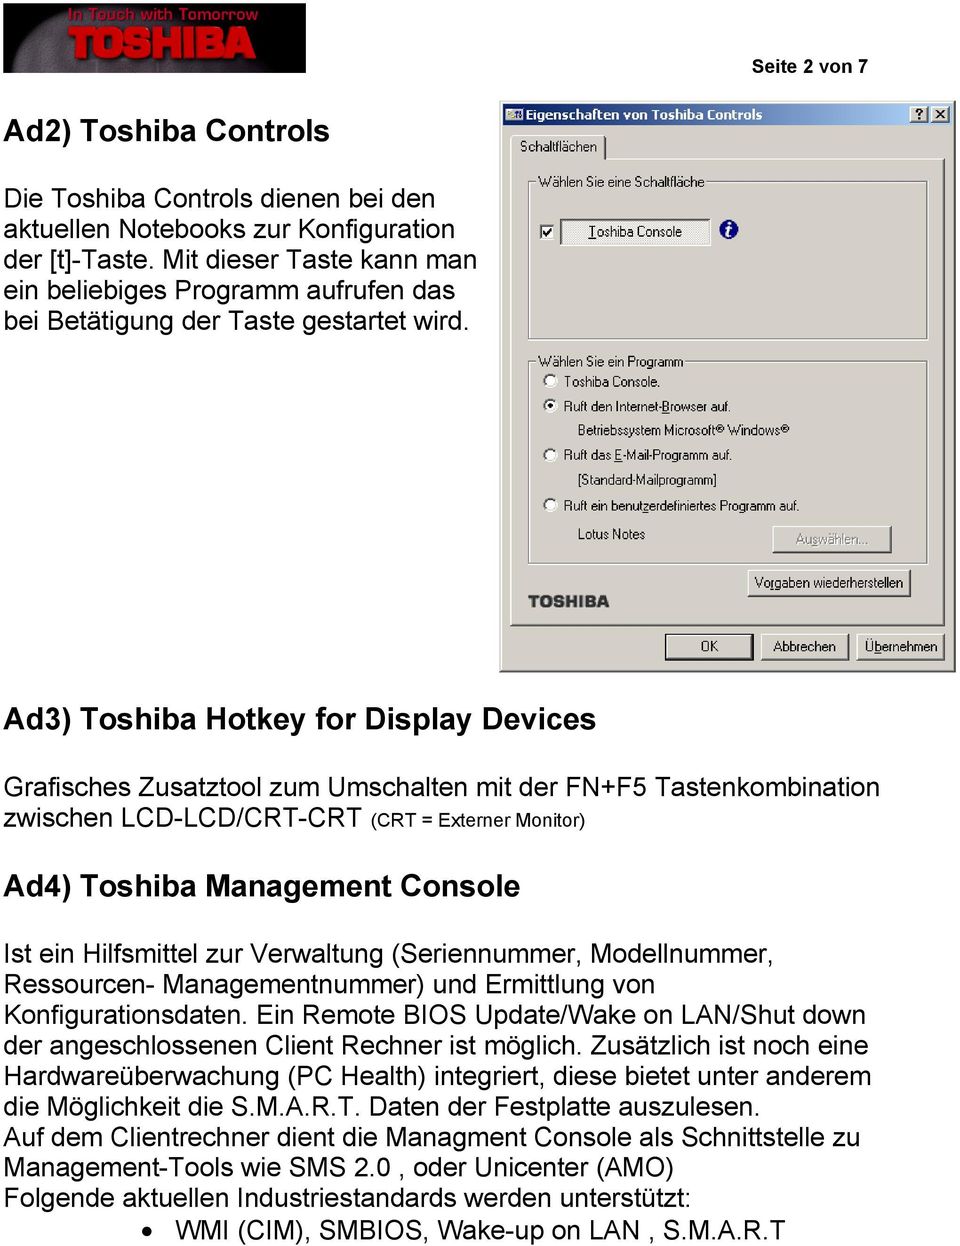 Ad3) Toshiba Hotkey for Display Devices Grafisches Zusatztool zum Umschalten mit der FN+F5 Tastenkombination zwischen LCD-LCD/CRT-CRT (CRT = Externer Monitor) Ad4) Toshiba Management Console Ist ein